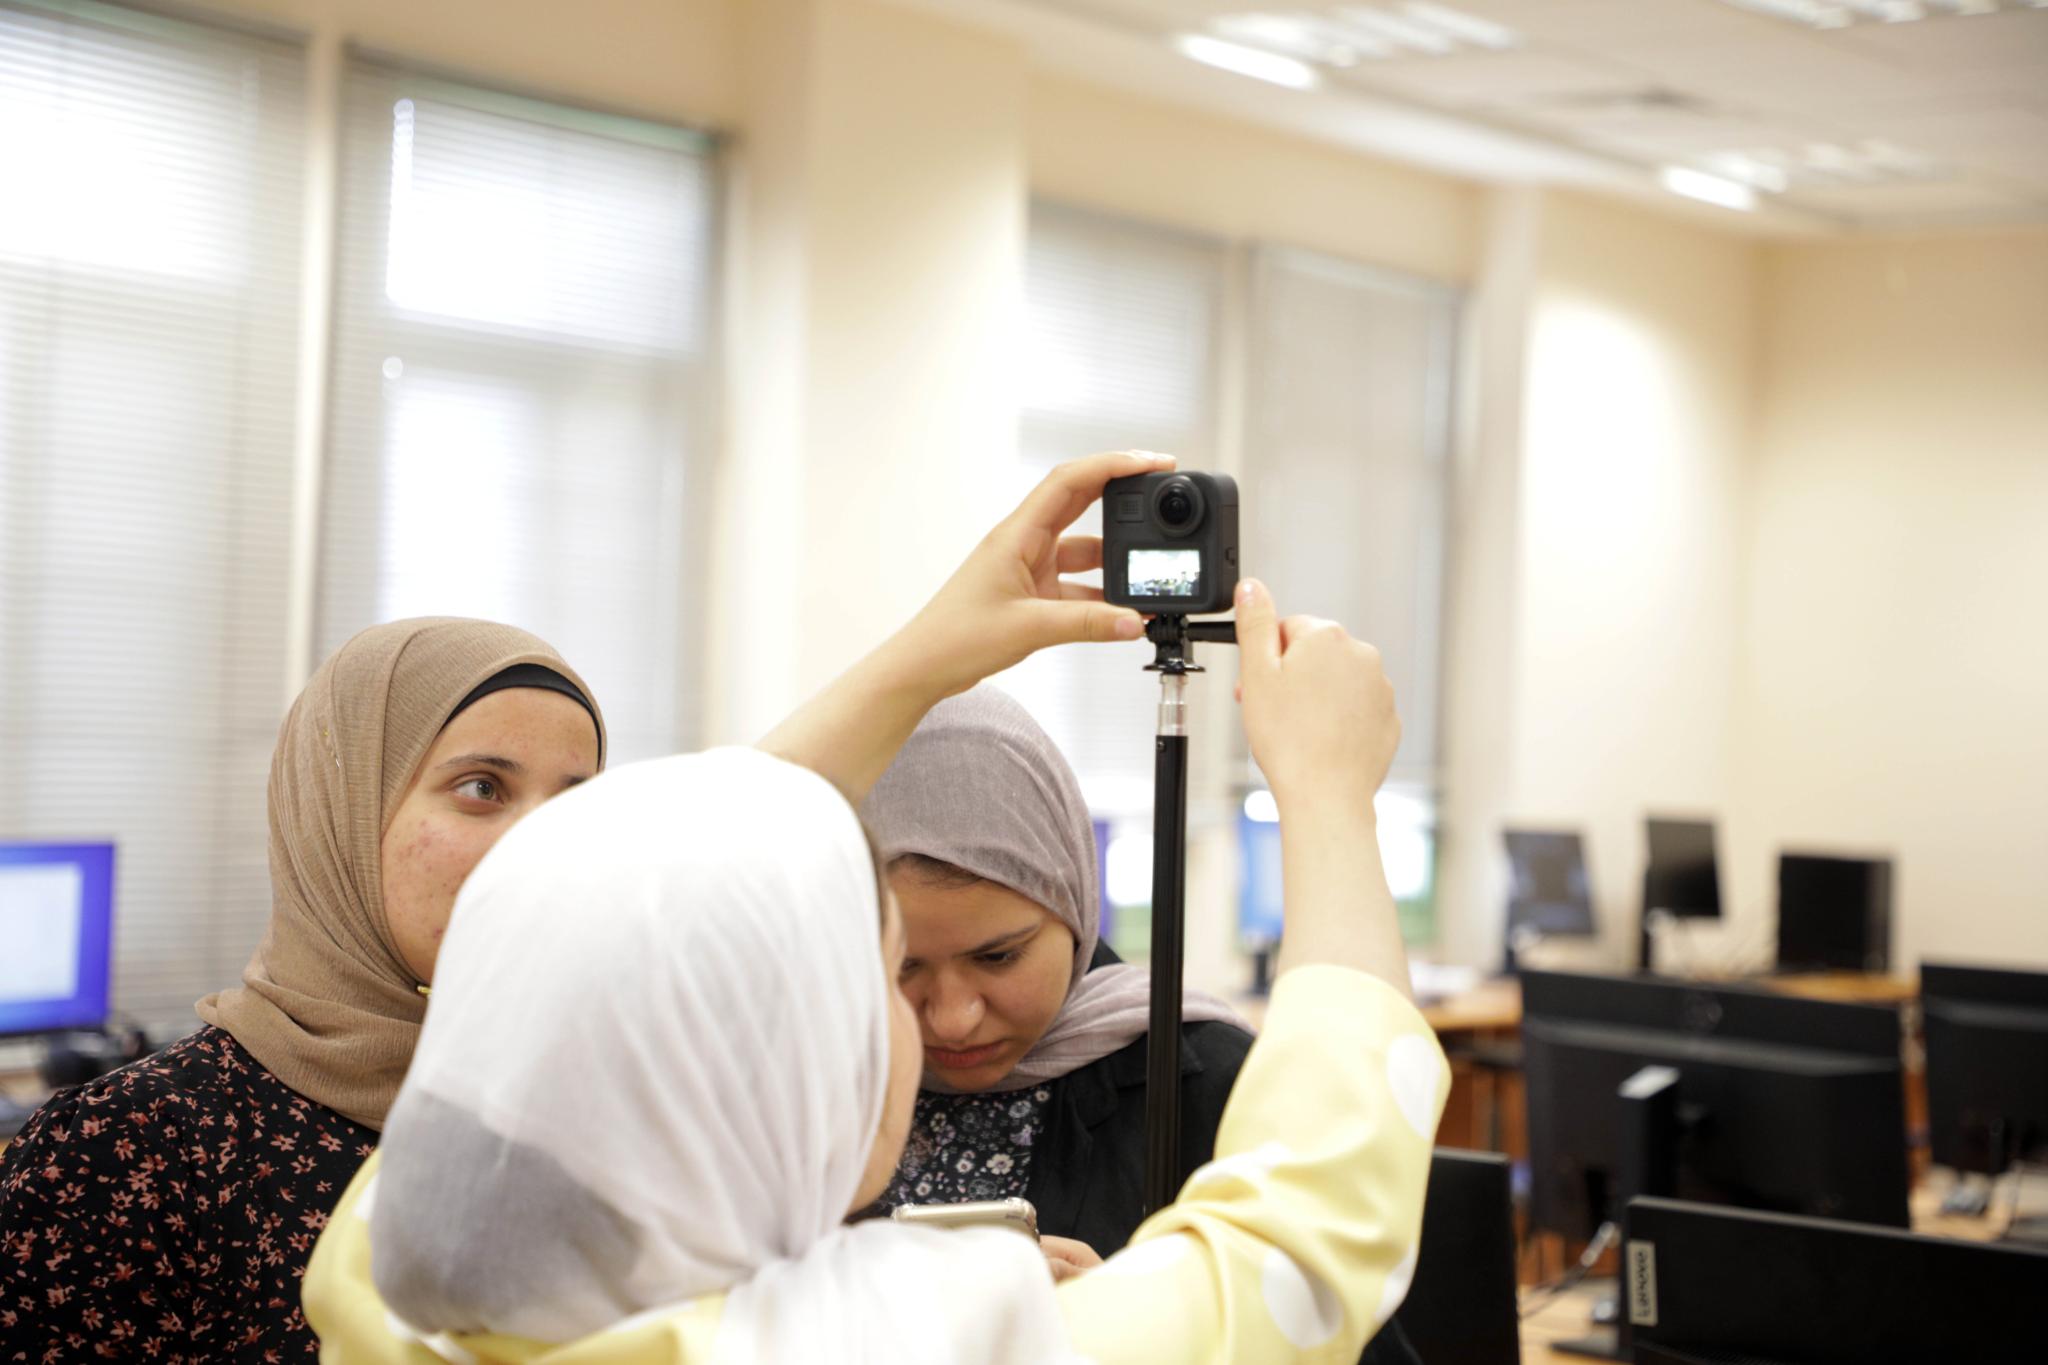 الجامعة تعقد ورشة عمل لموظفيها وطلبتها حول تقنية تصوير وإنتاج أفلام 360 لاستخدامها في الواقع الافتراضي 